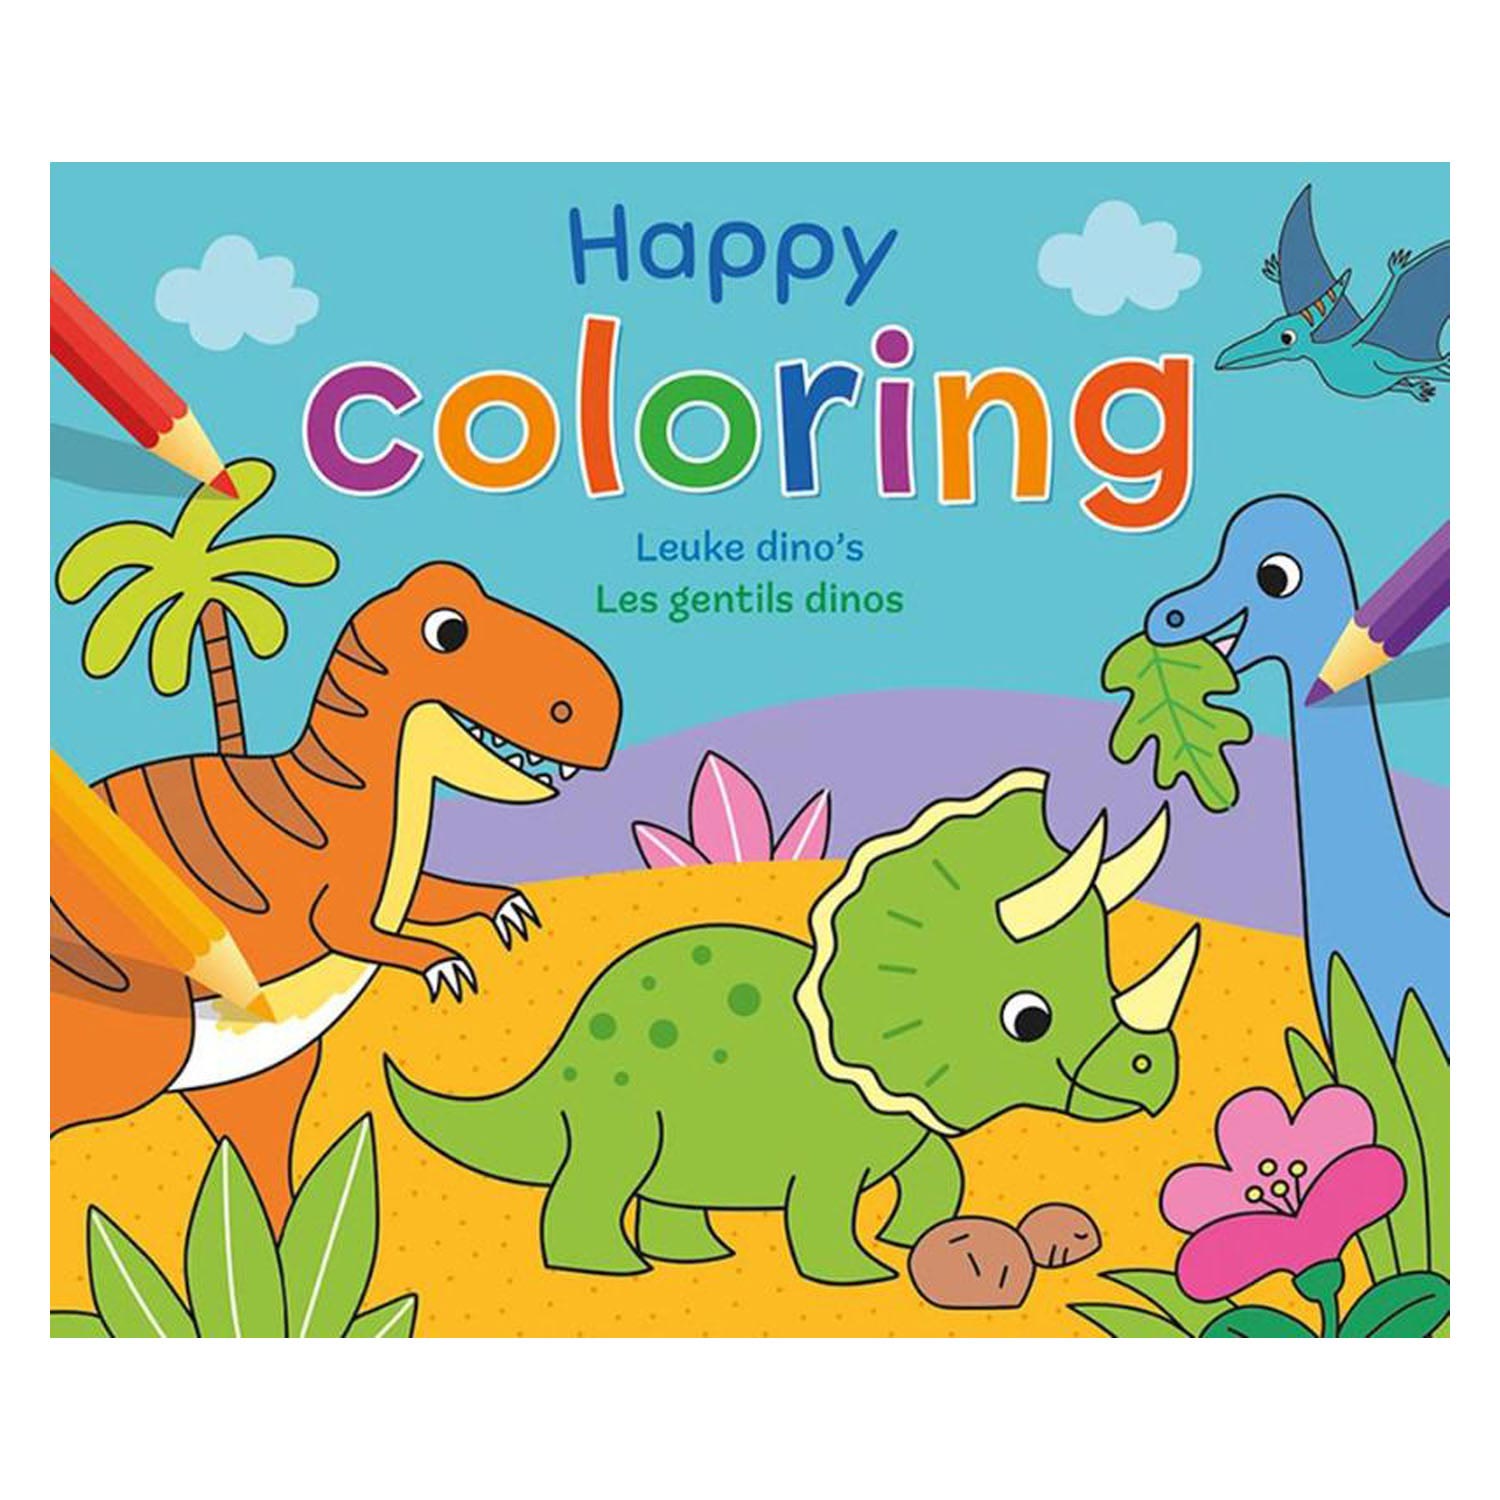 Happy Coloring - Dinosaures mignons